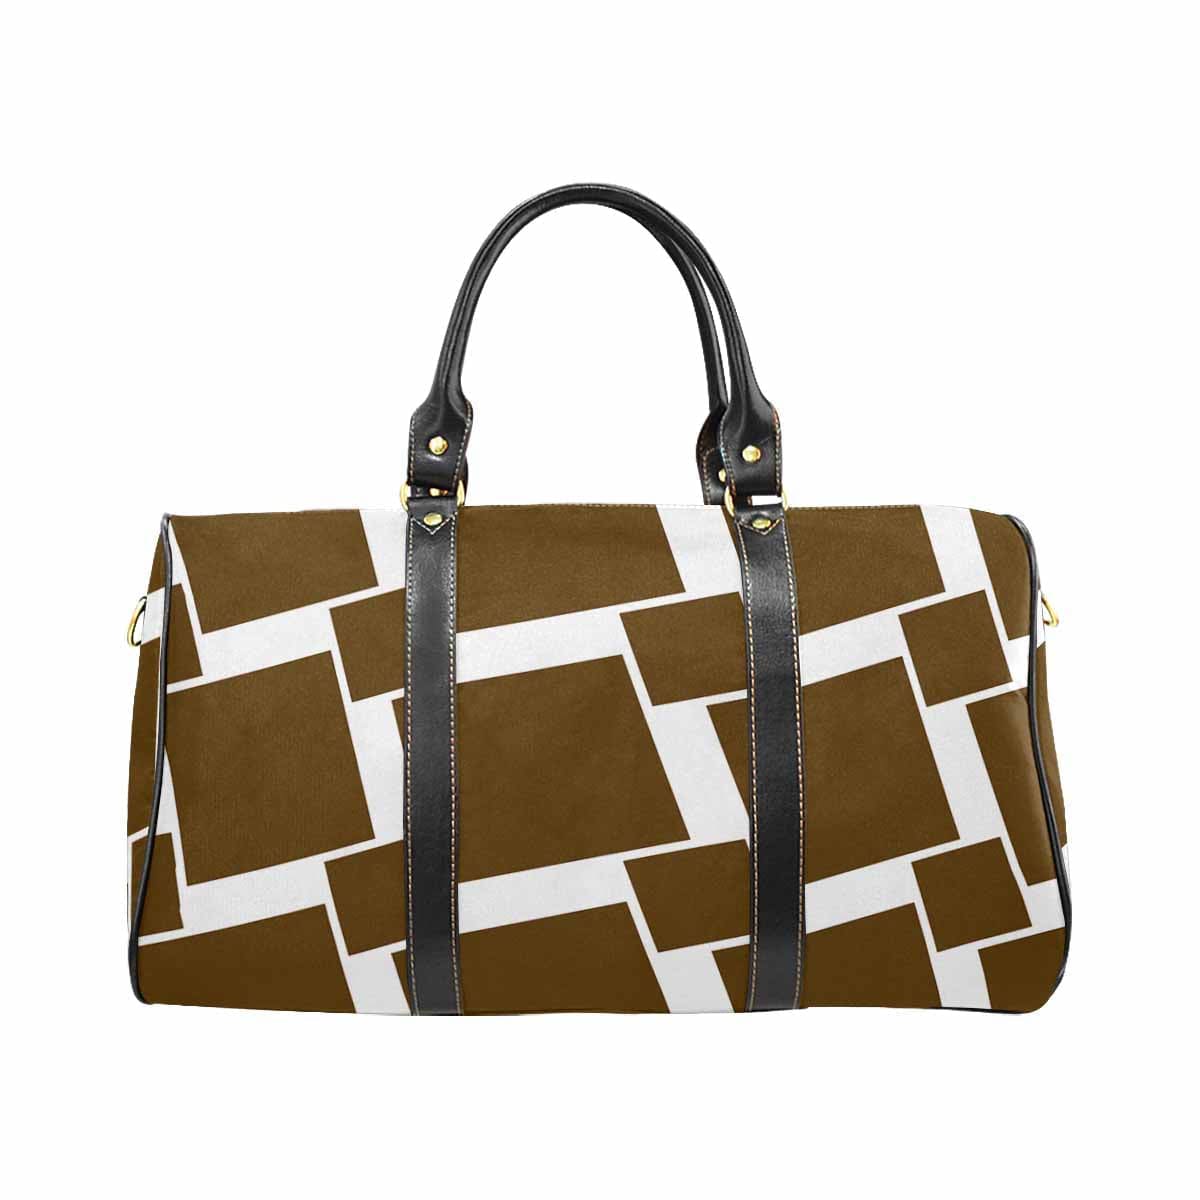 Travel Bag Adjustable Shoulder Strap Carry On Bag Olive Green - Bags | Travel